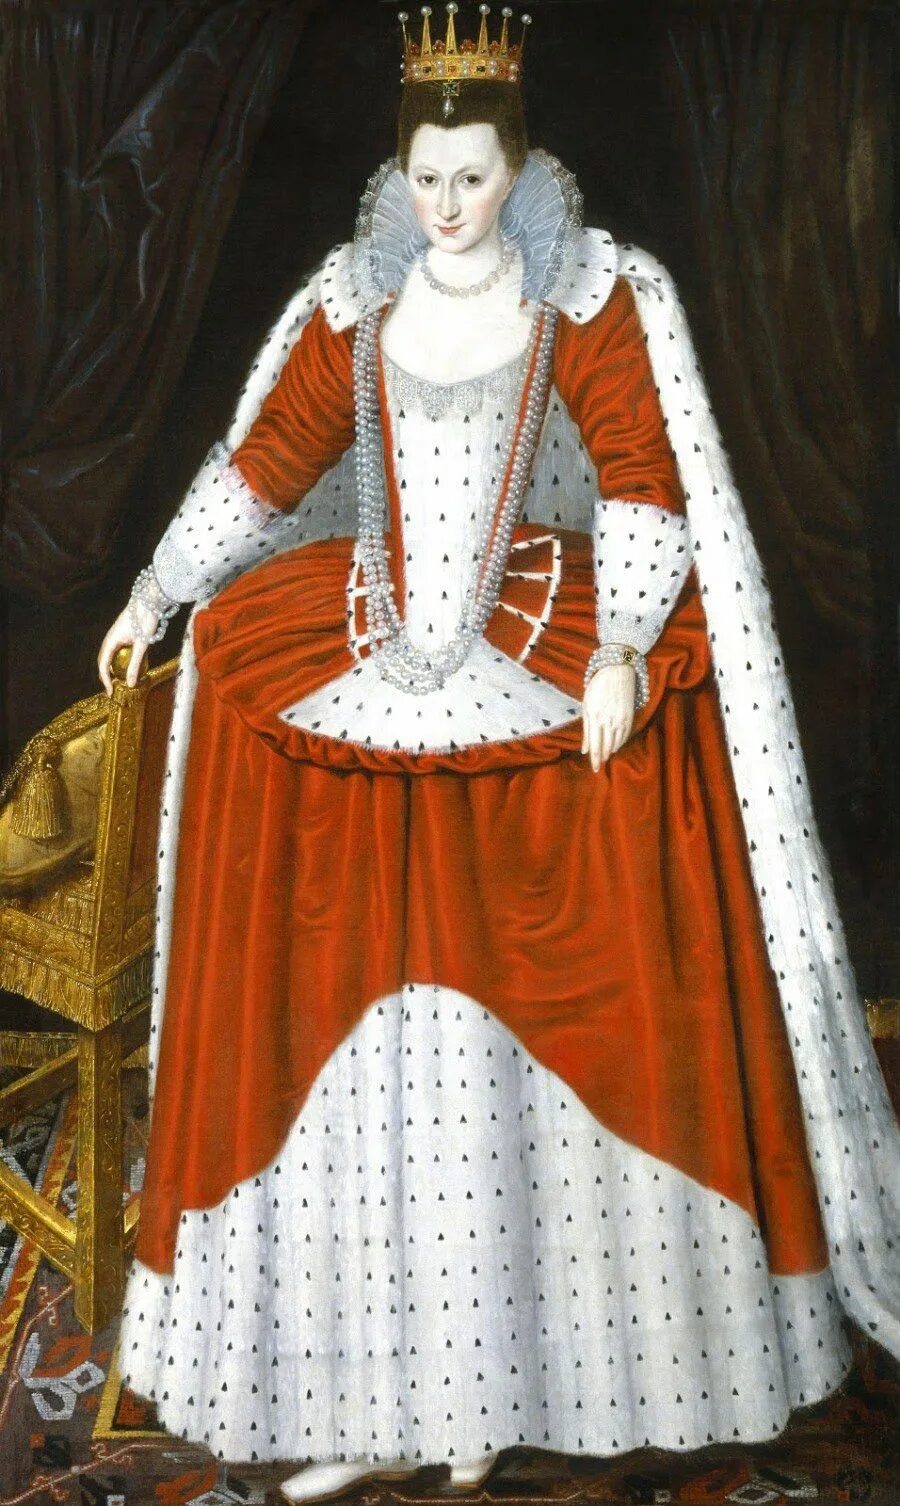 14 16 века эпоха. Платье Англия 16 век эпоха Возрождение. Уильям Ларкин 1580-1619 портреты. Костюм Англии эпохи Возрождения 16 век.